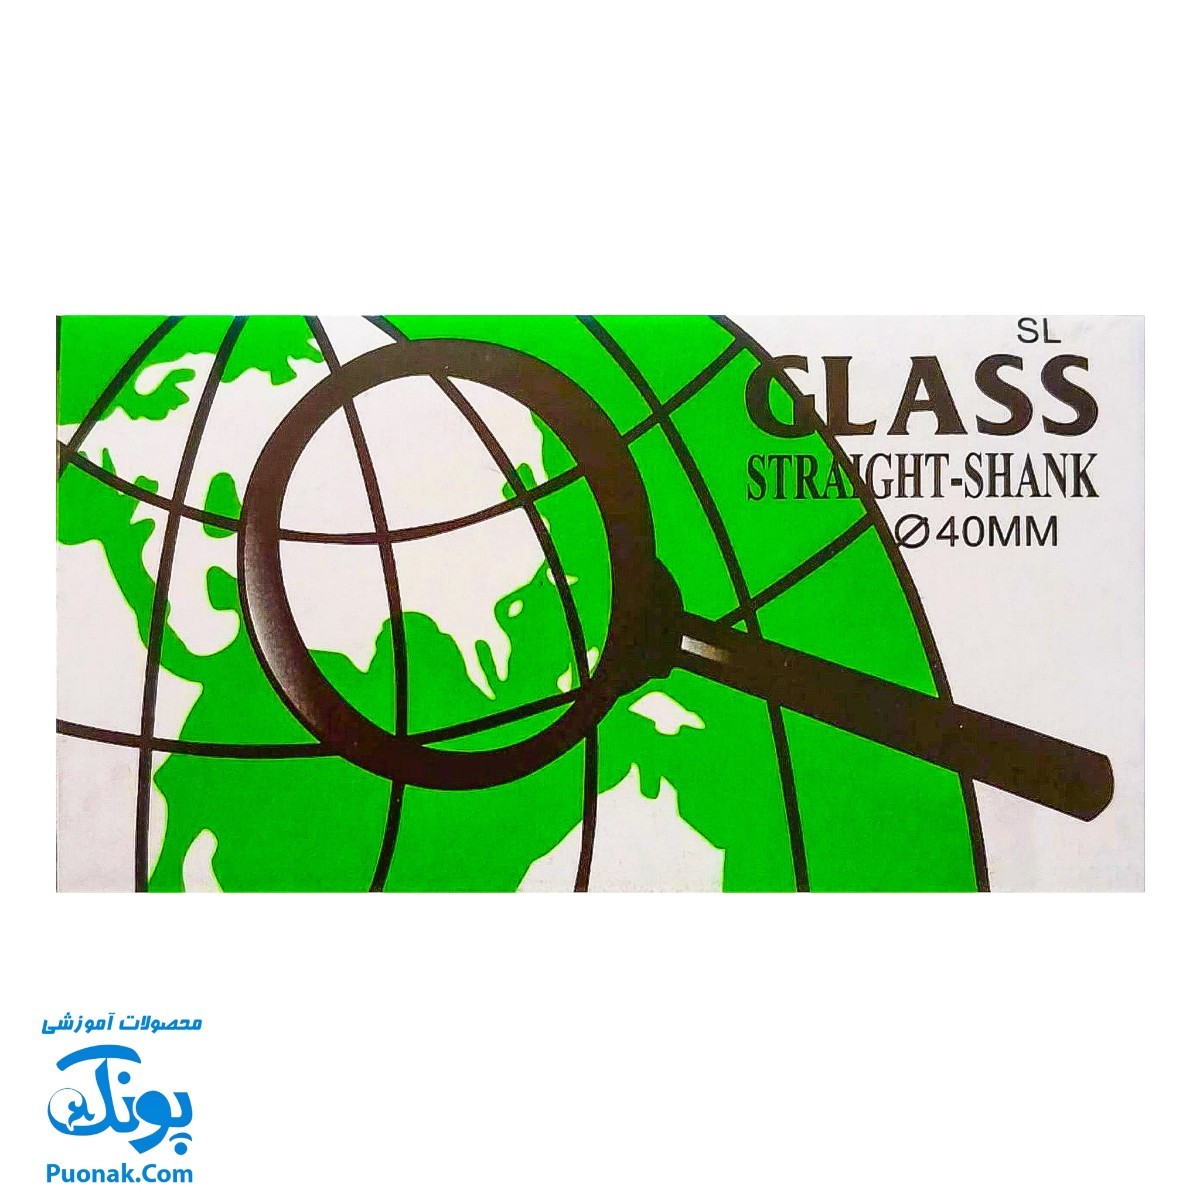 ذره بین گلاس مدل glass ۴۰mm